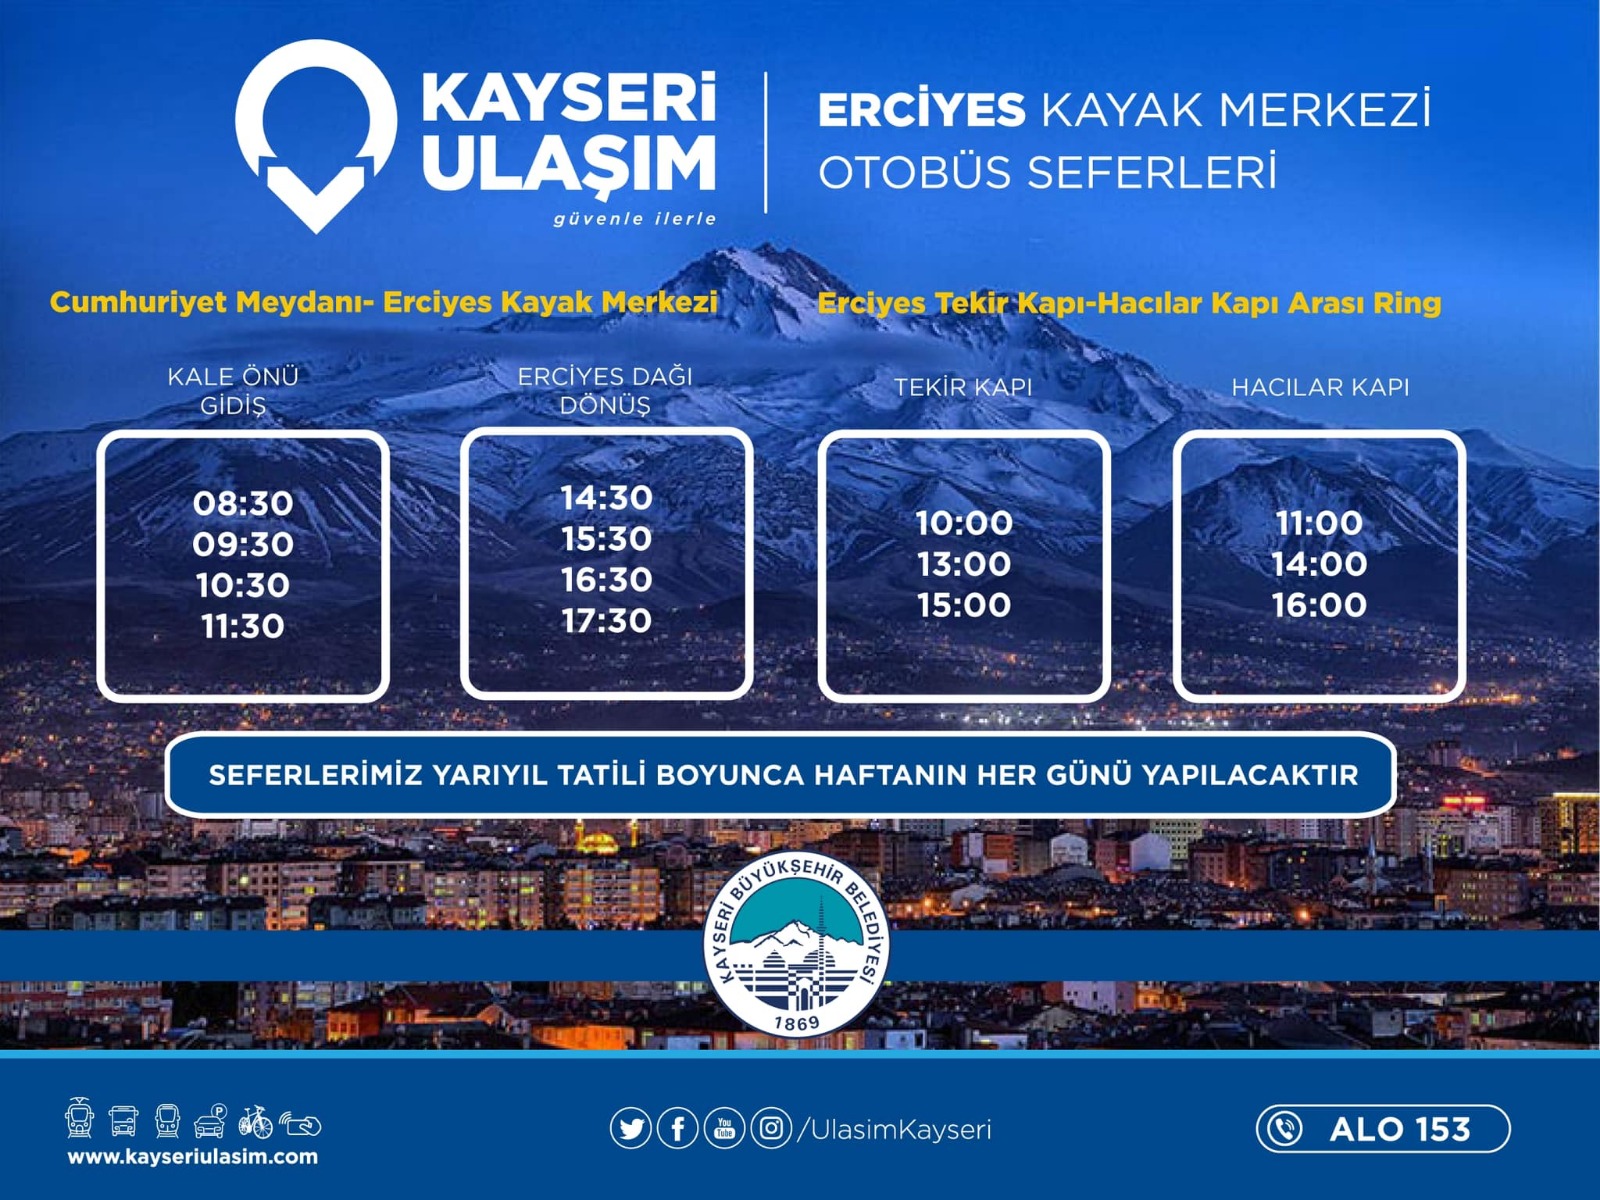 Erciyes’e, yarıyıl tatili süresince her gün otobüs seferi düzenlenecek